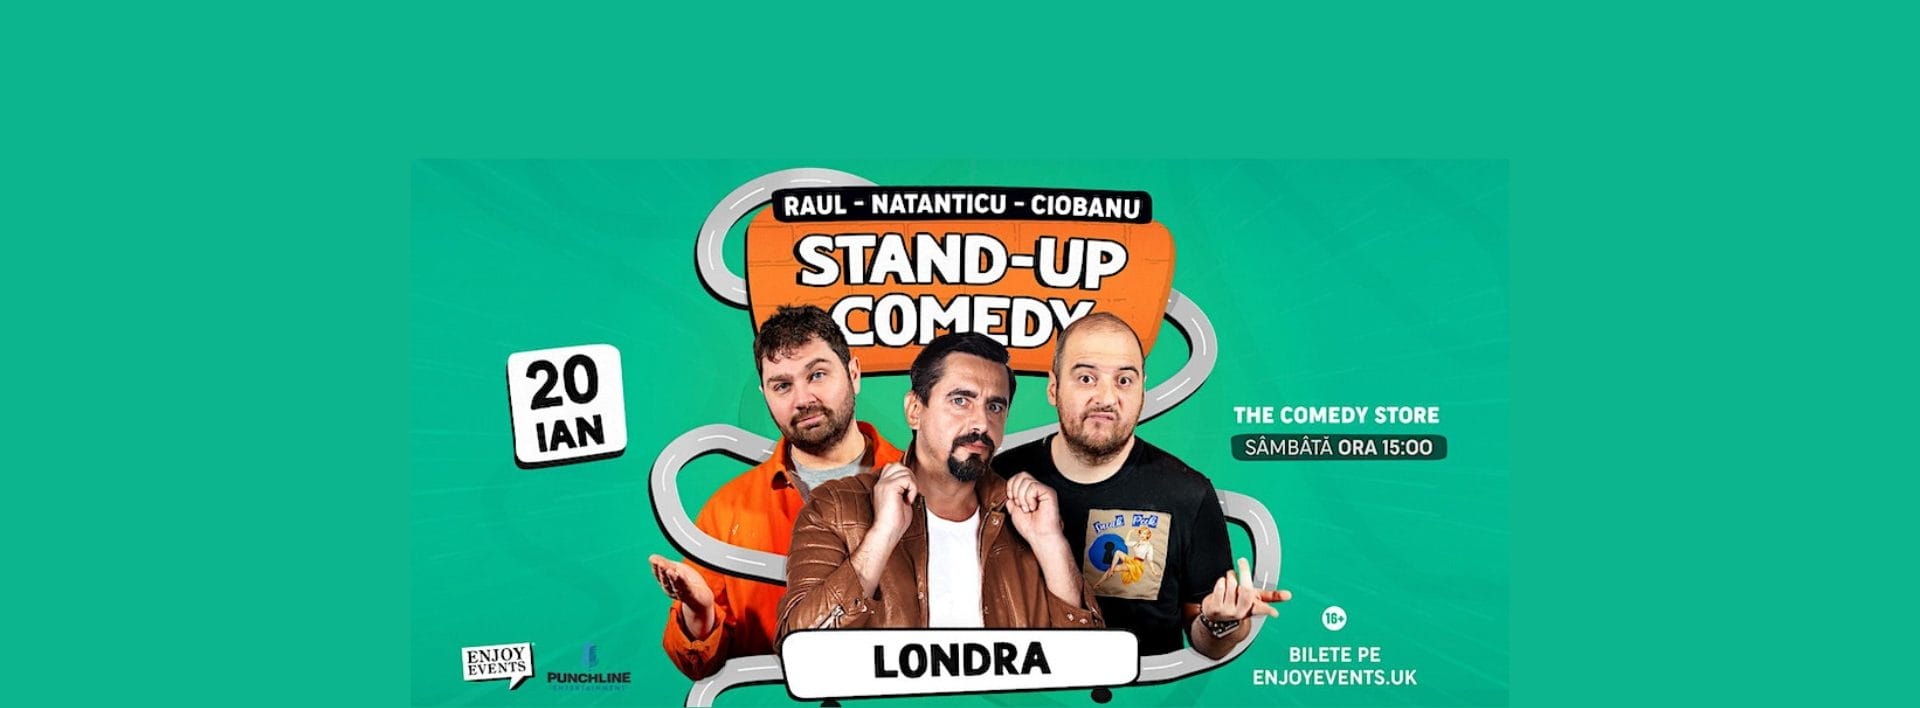 Stand Up Comedy cu Raul, Natanticu și Ciobanu